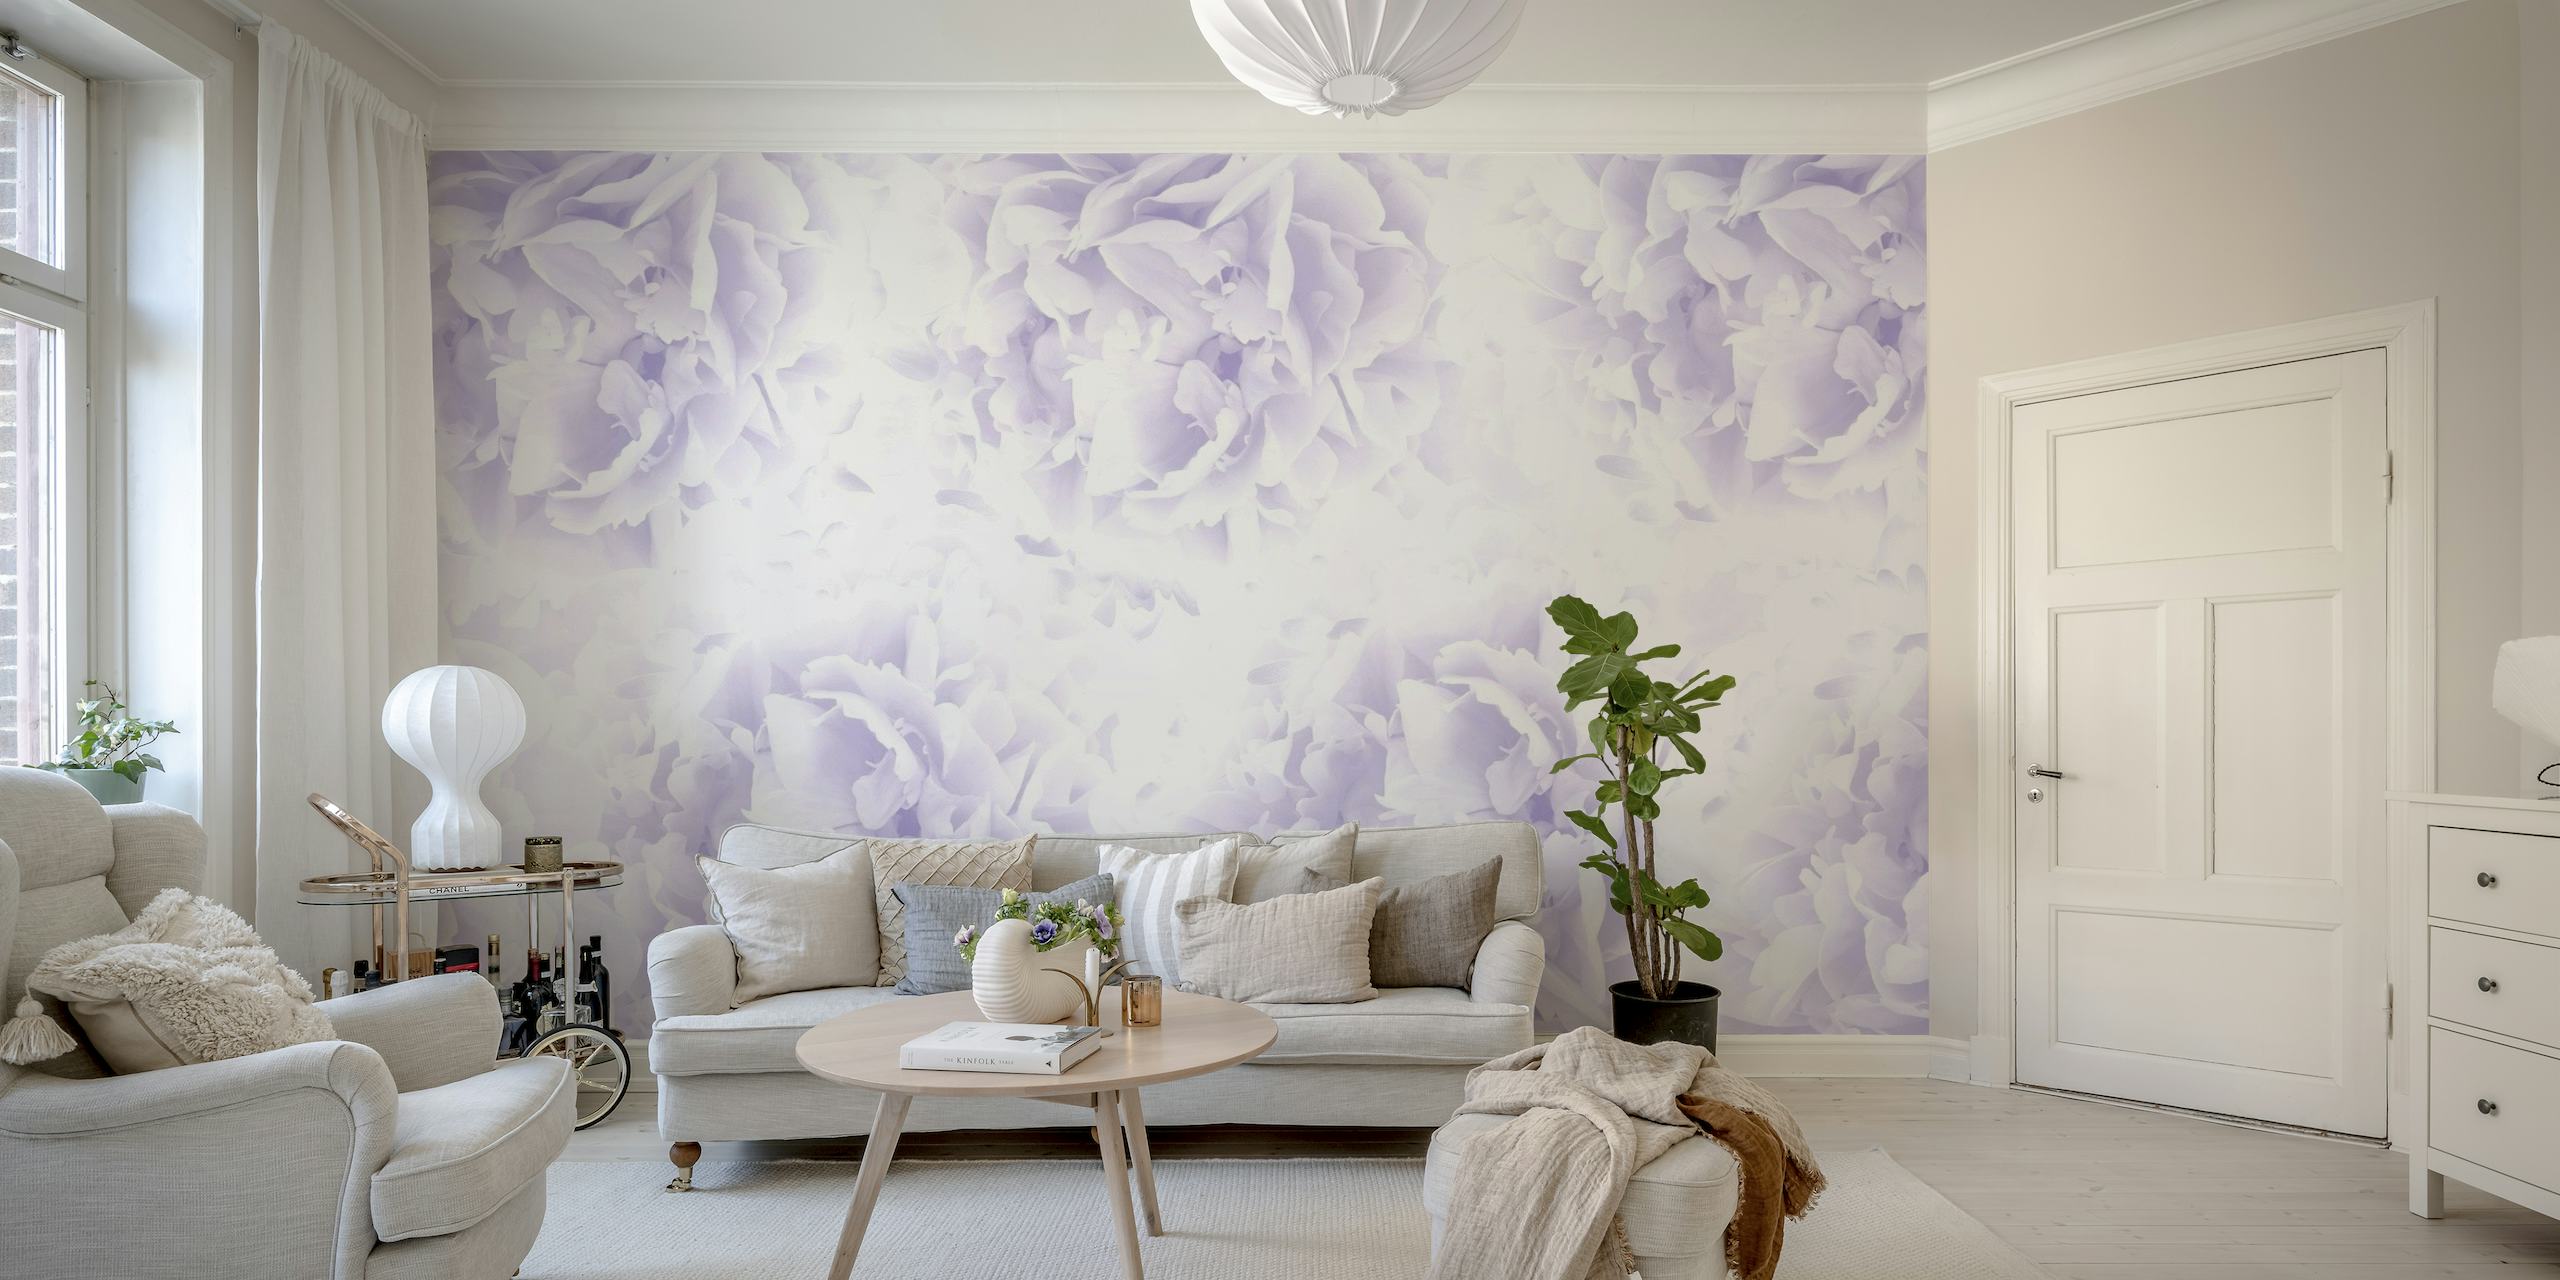 Fotomural vinílico de parede de peônias suaves de lavanda com um padrão floral sonhador e romântico